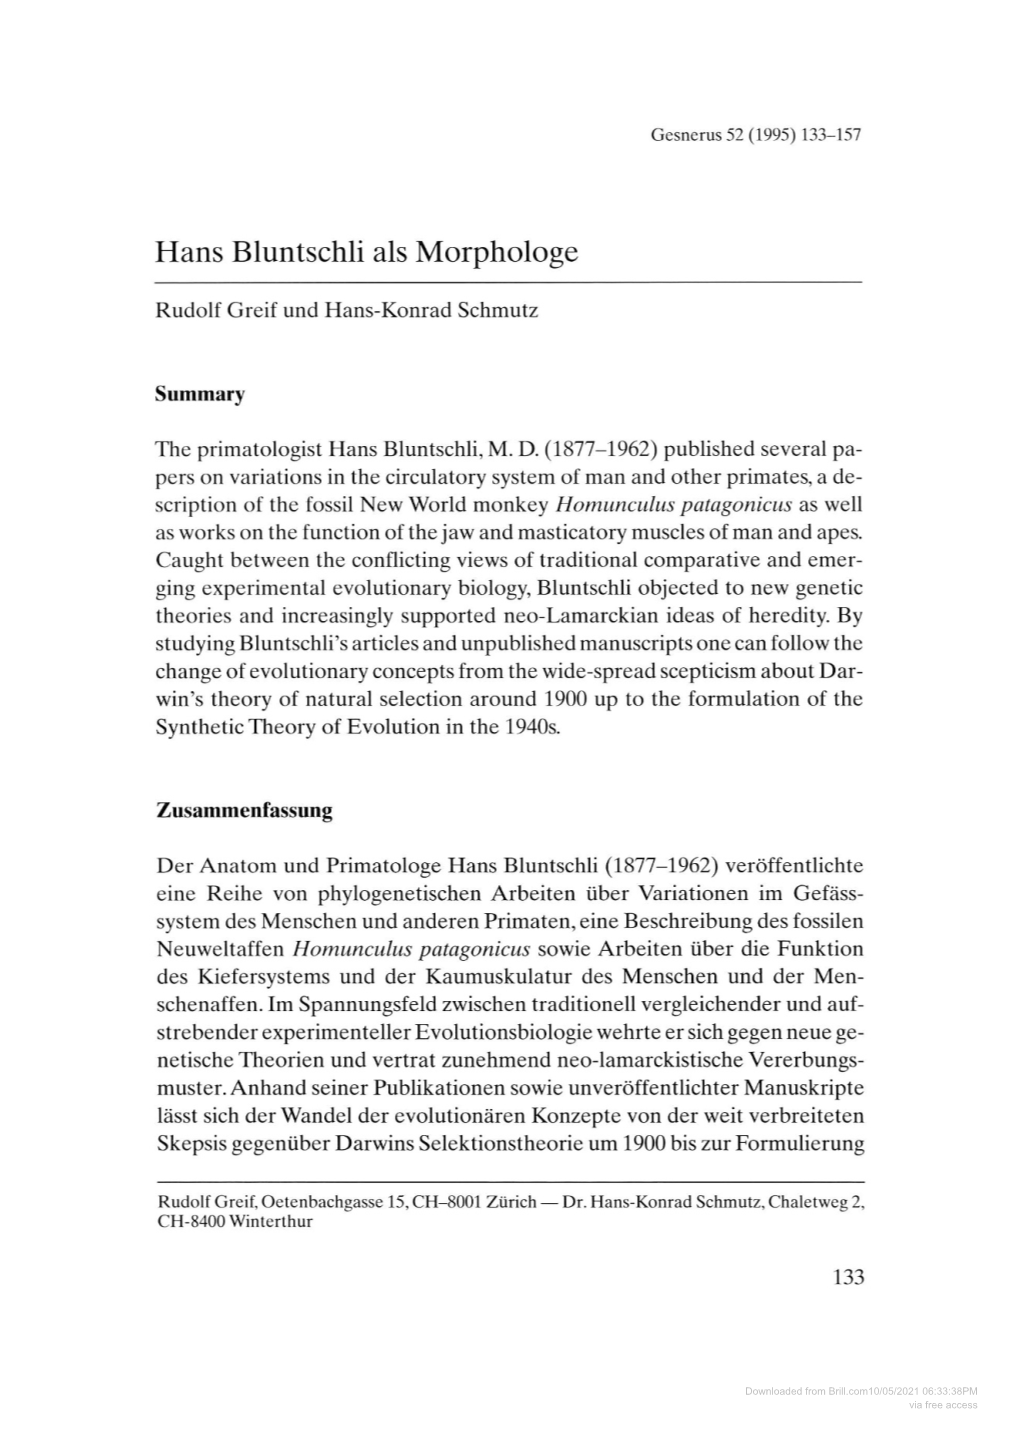 Hans Bluntschli Als Morphologe